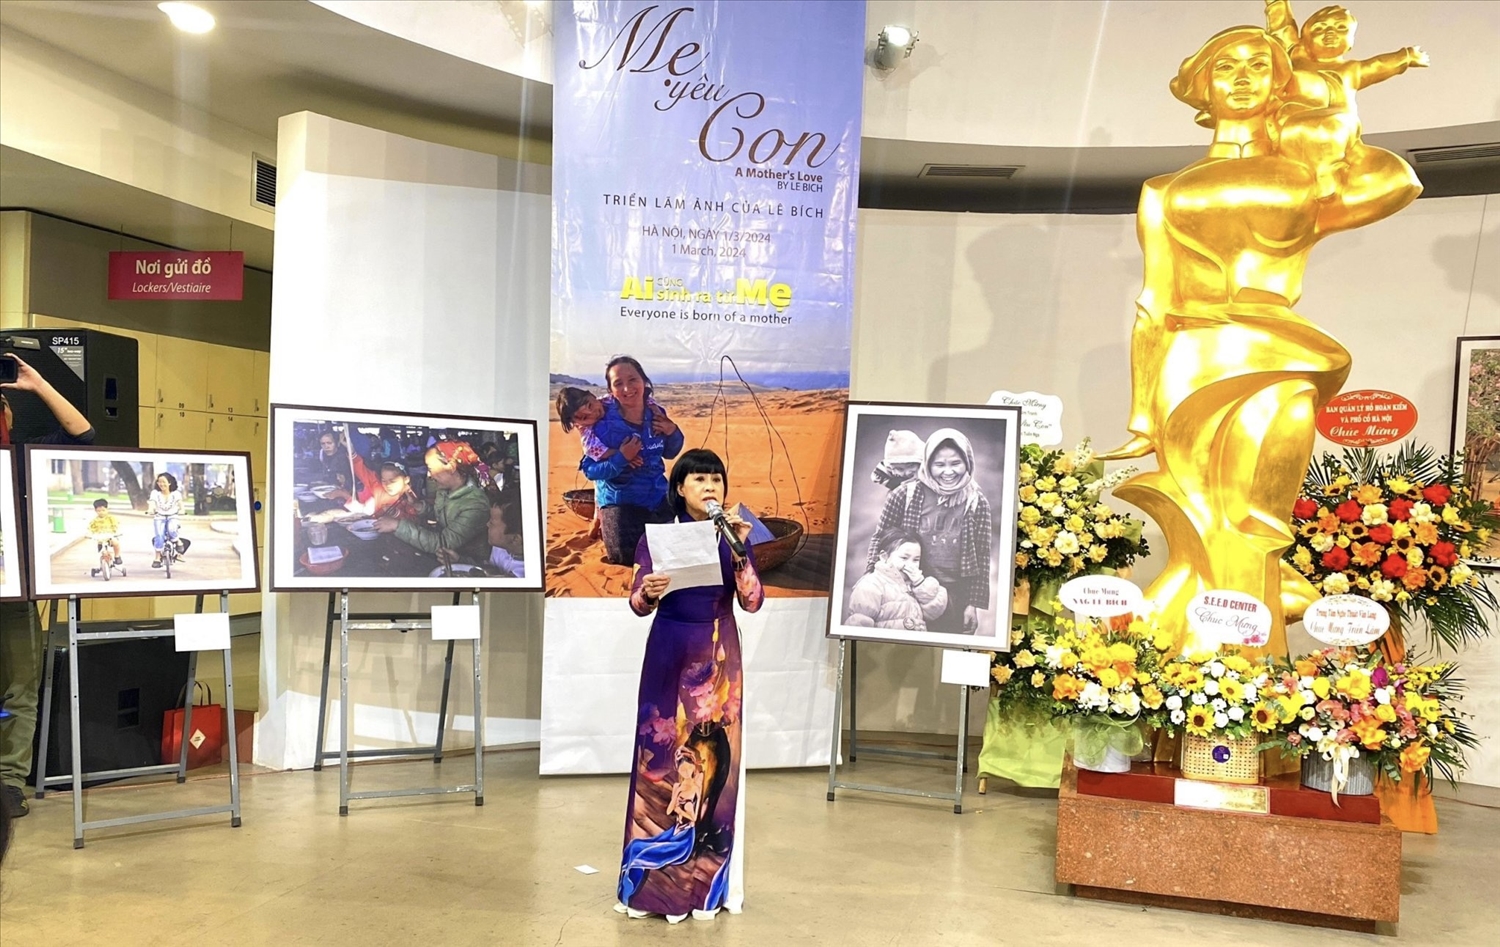 Nghệ sĩ Hồng Liên ngâm thơ về tình mẹ lấy cảm hứng từ câu chuyện của bé Thiện Nhân đã được nhiếp ảnh gia Lê Bích chụp ảnh trưng bày trong triển lãm. 